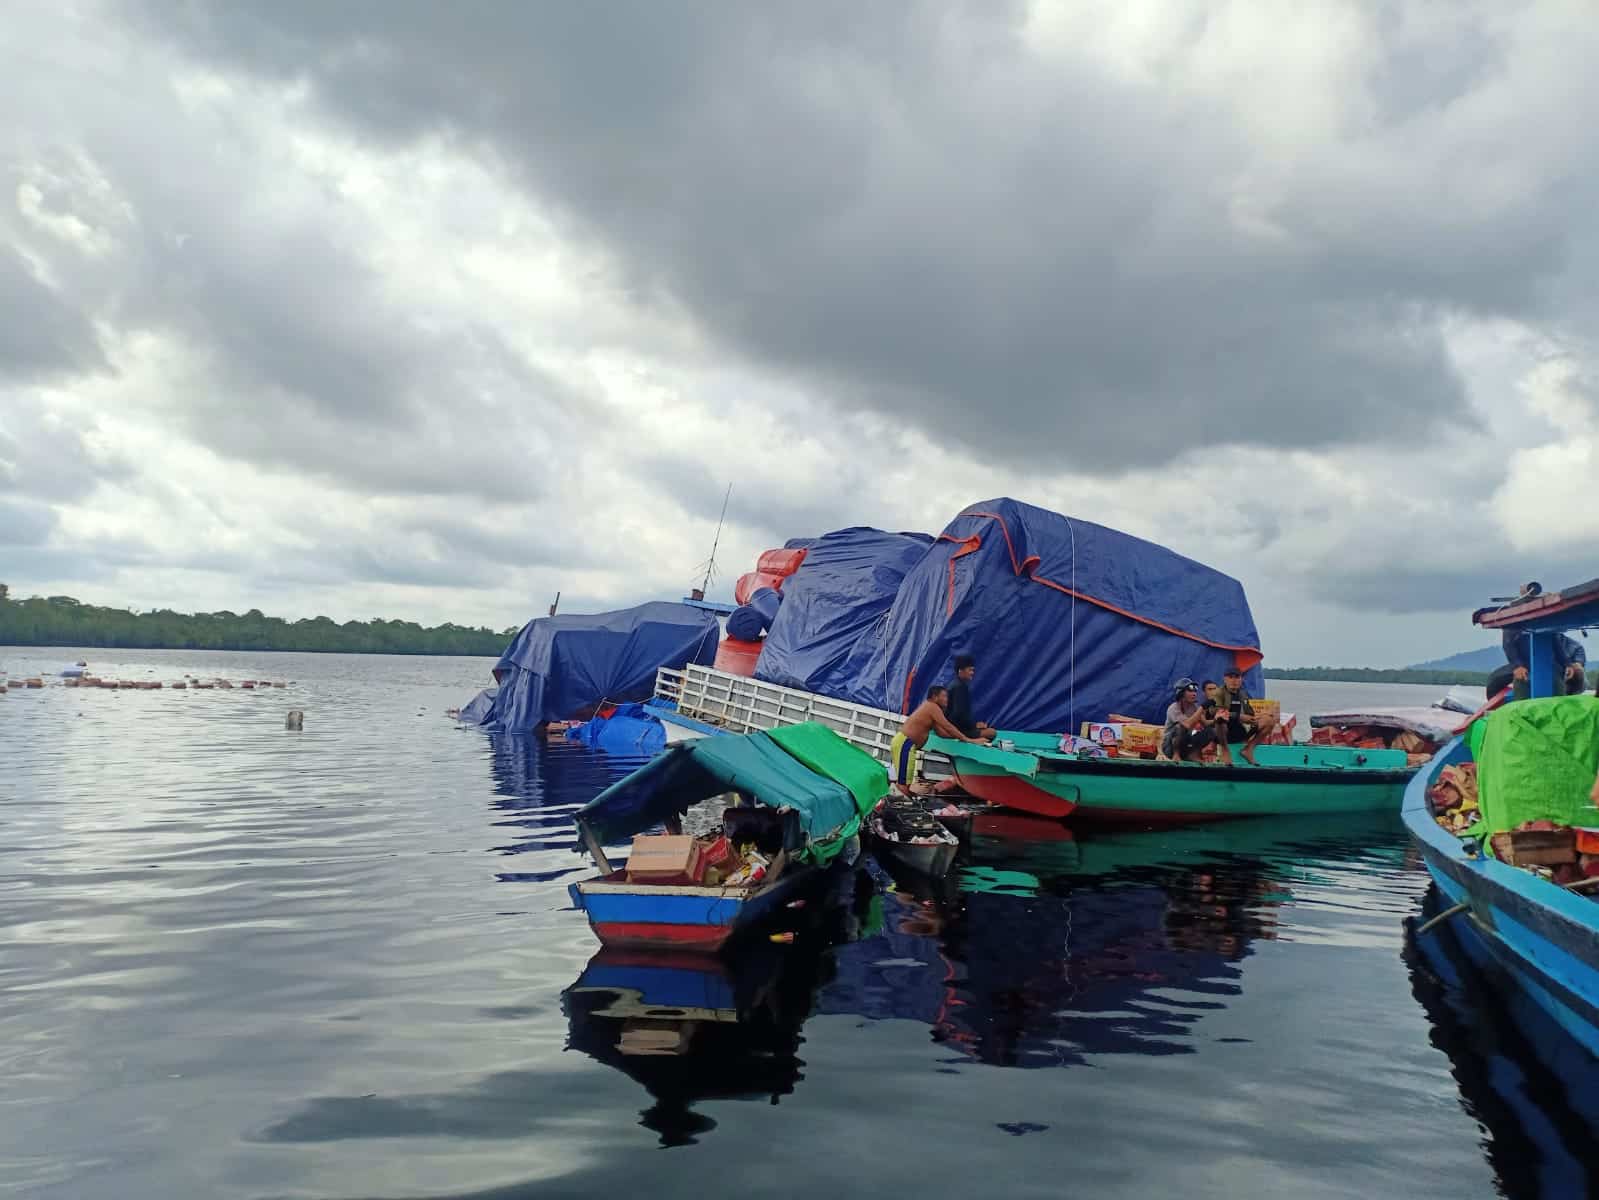 Proses evakuasi terhadap nahkoda dan kru kapal motor barang KM Hasil Utama yang tenggelam di perairan Batu Ampar. (Foto: Humas Polres Kubu Raya)